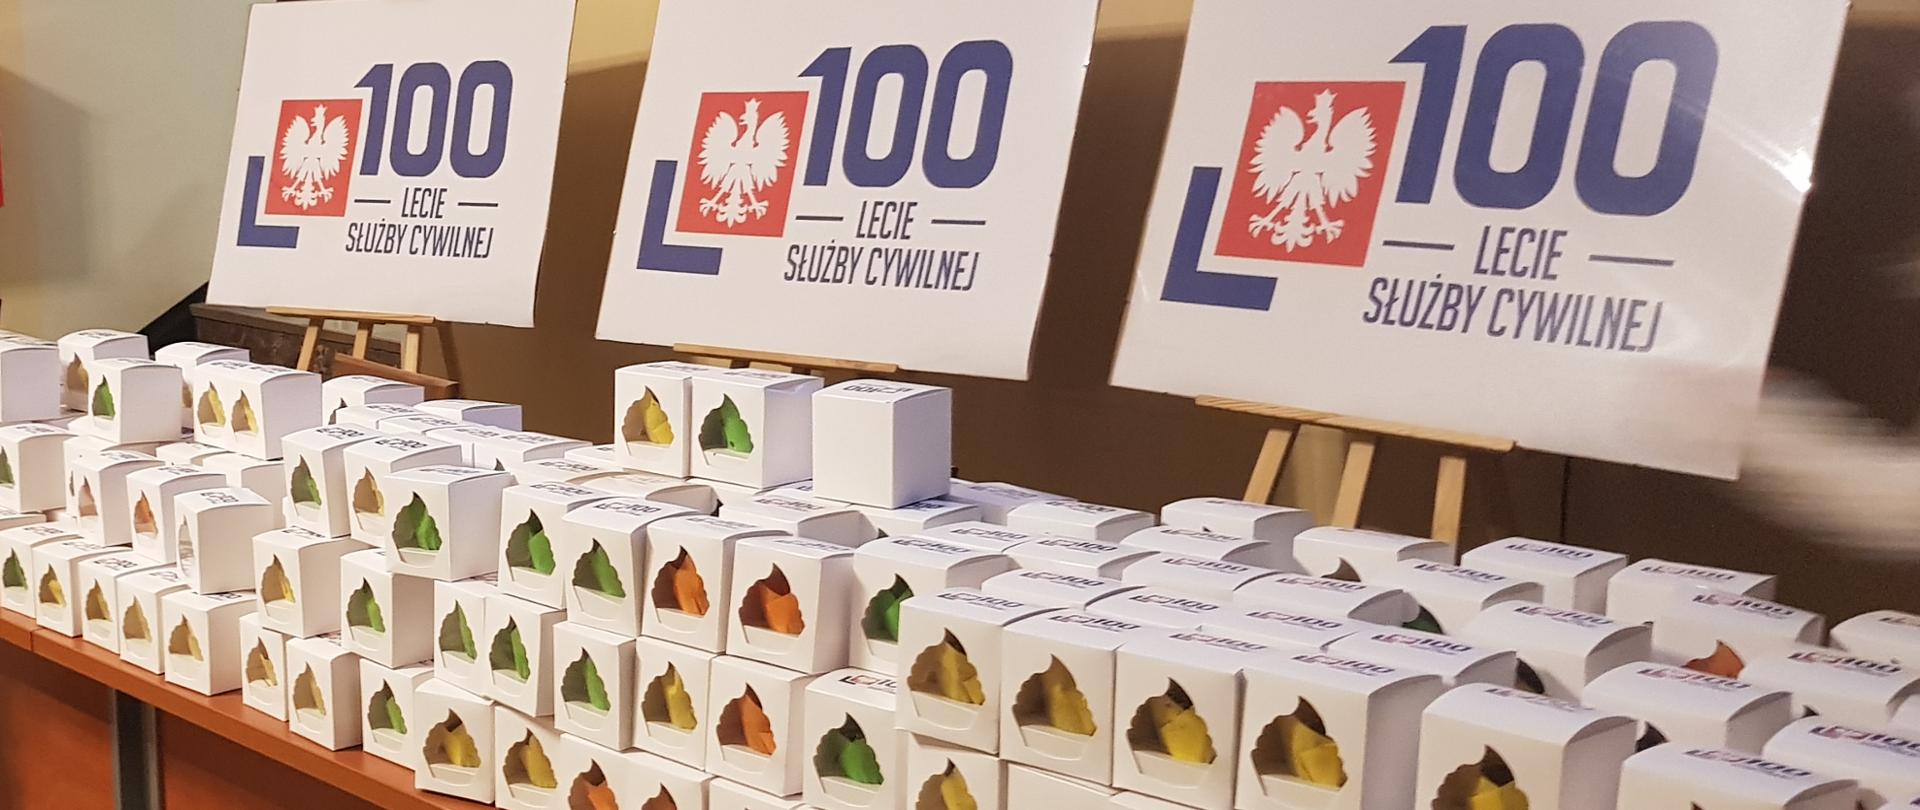 Na długim stole pudełka z upominkami dla pracowników Zachodniopomorskiego Urzędu Wojewódzkiego w Szczecinie z okazji 100-lecia służby cywilnej. Ponad stołem tablice z symbolem obchodów tego jubileuszu.